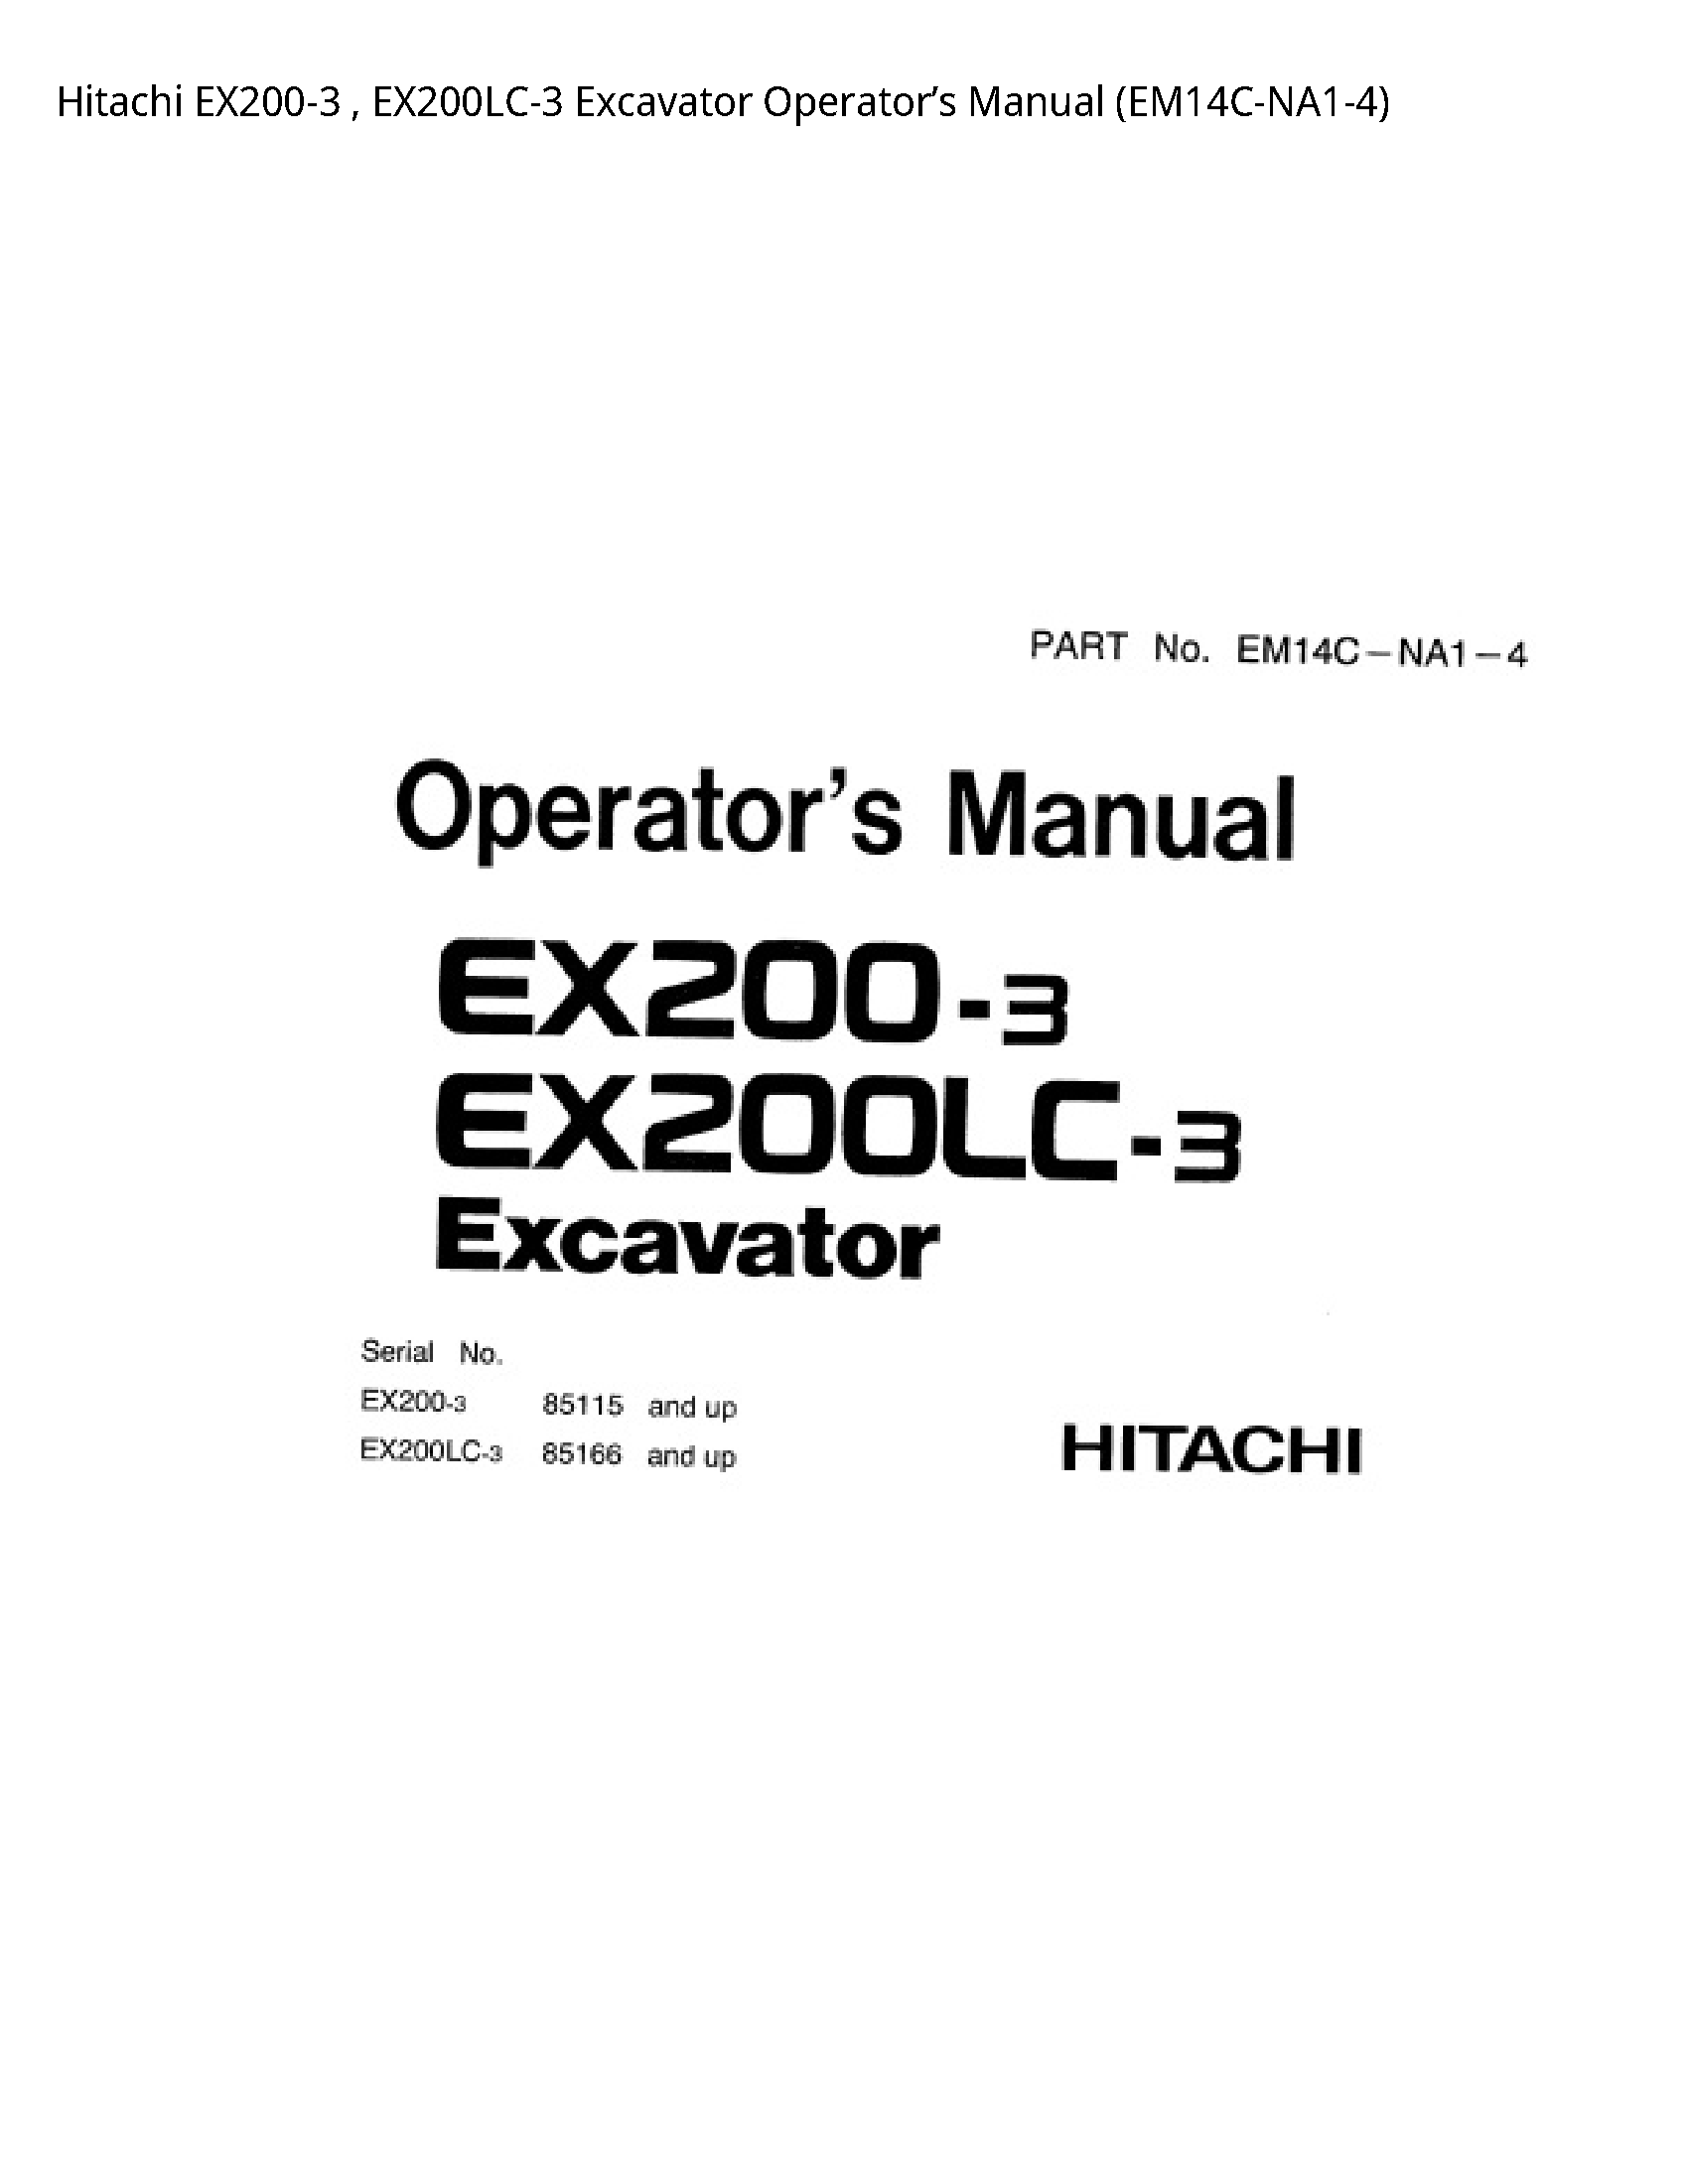 Hitachi EX200-3 Excavator Operator’s manual